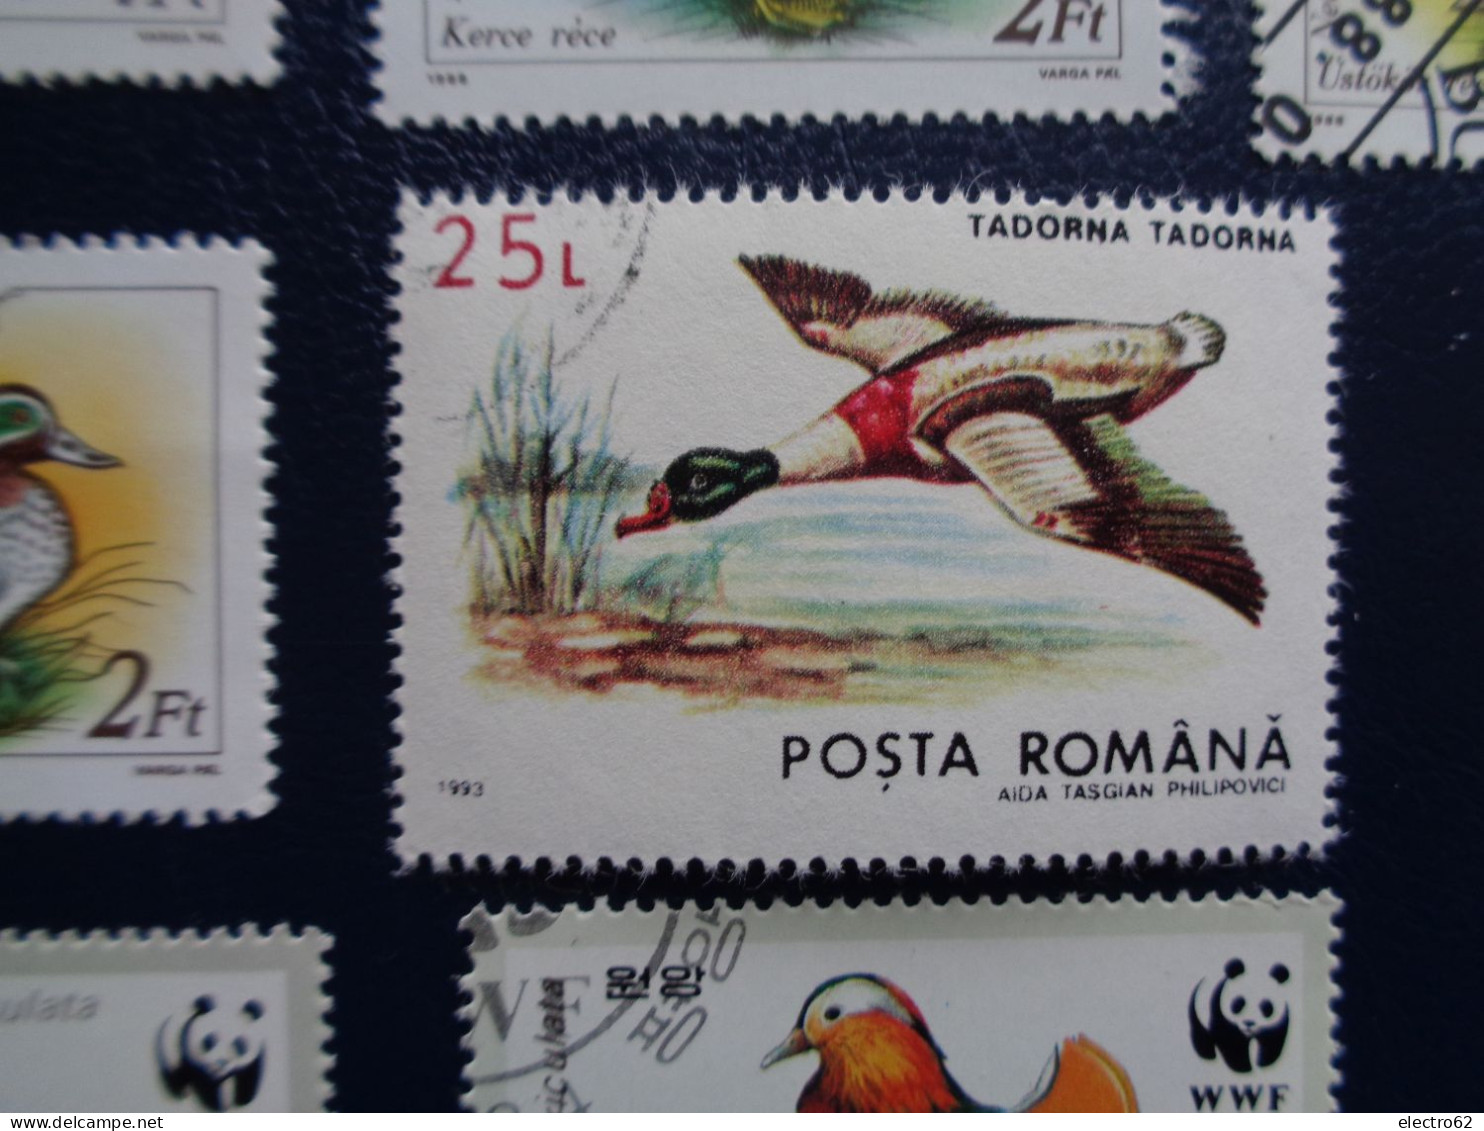 Roumanie  Cambodge canard duck ente pato anatra eend giappone and Hongrie Corée Romana Magyar posta Korea